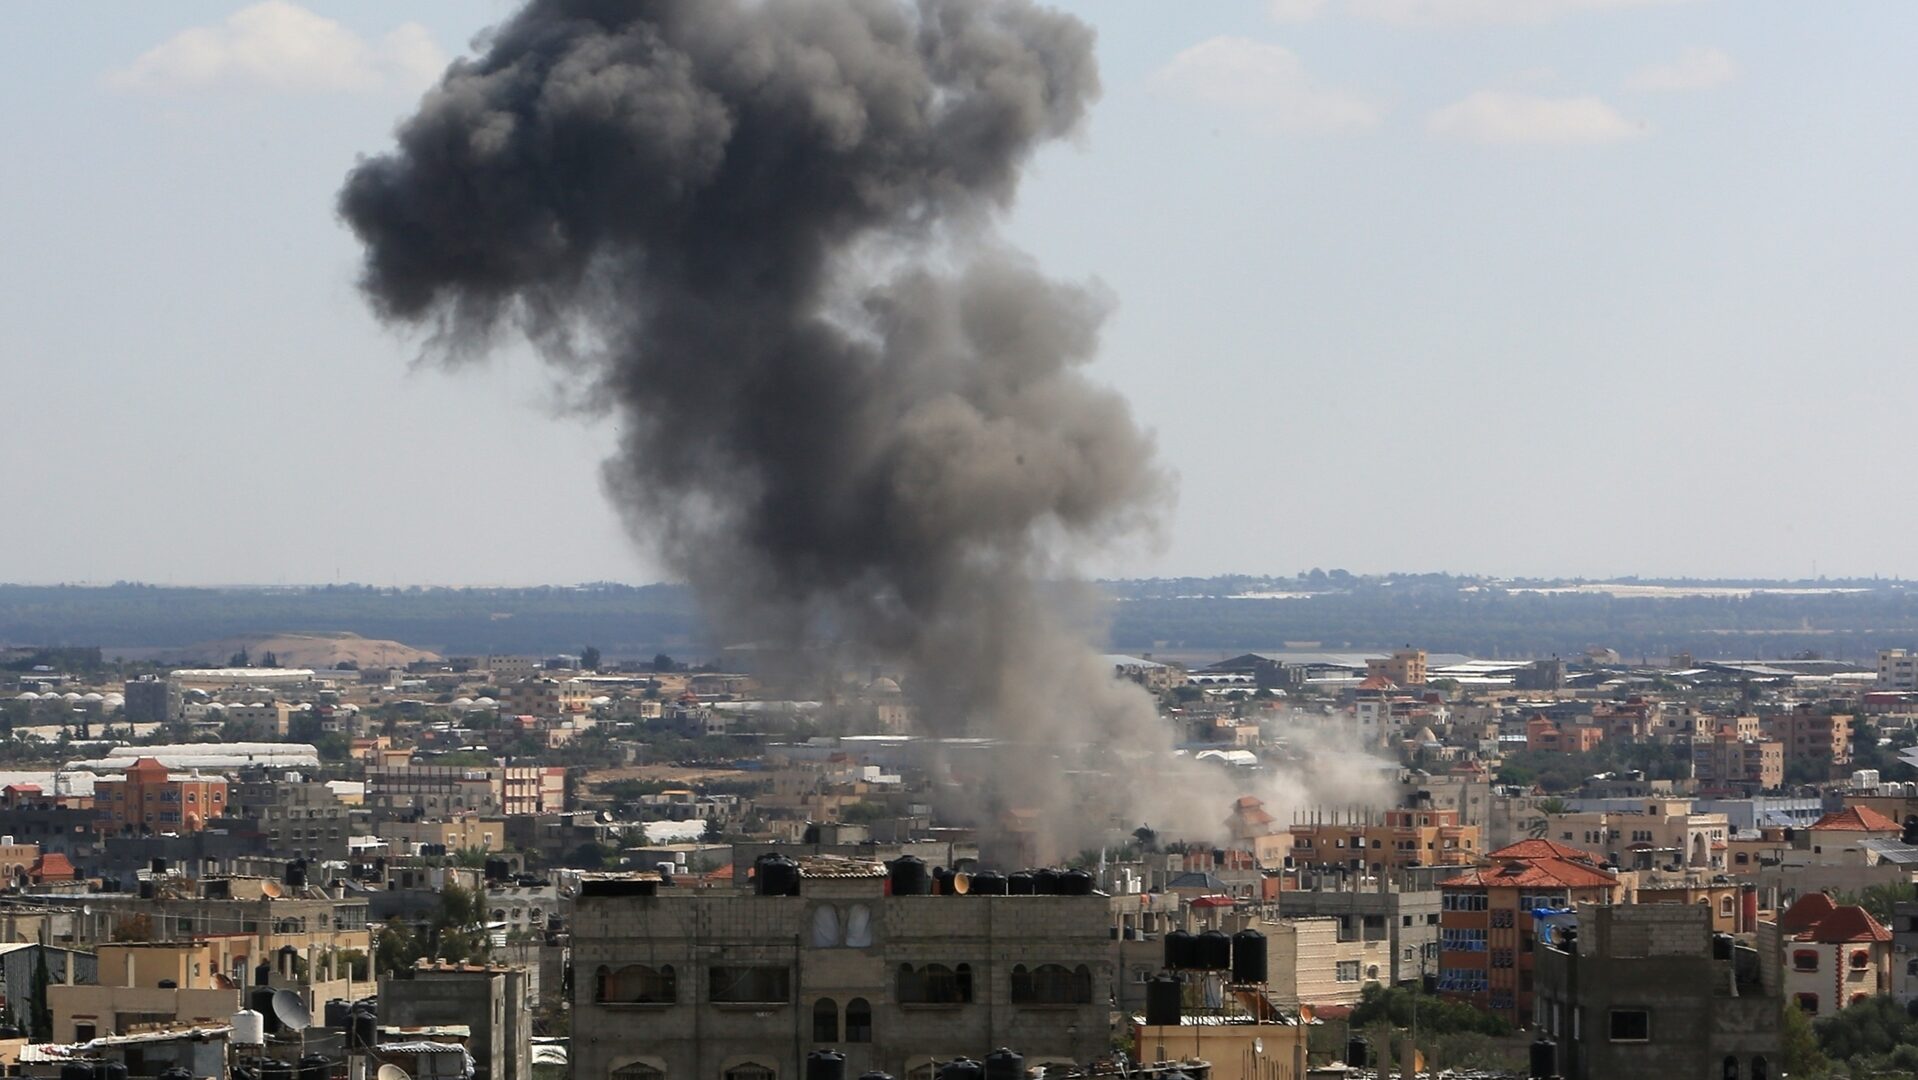 Gazans Reeling During Intense Israeli Airstrikes